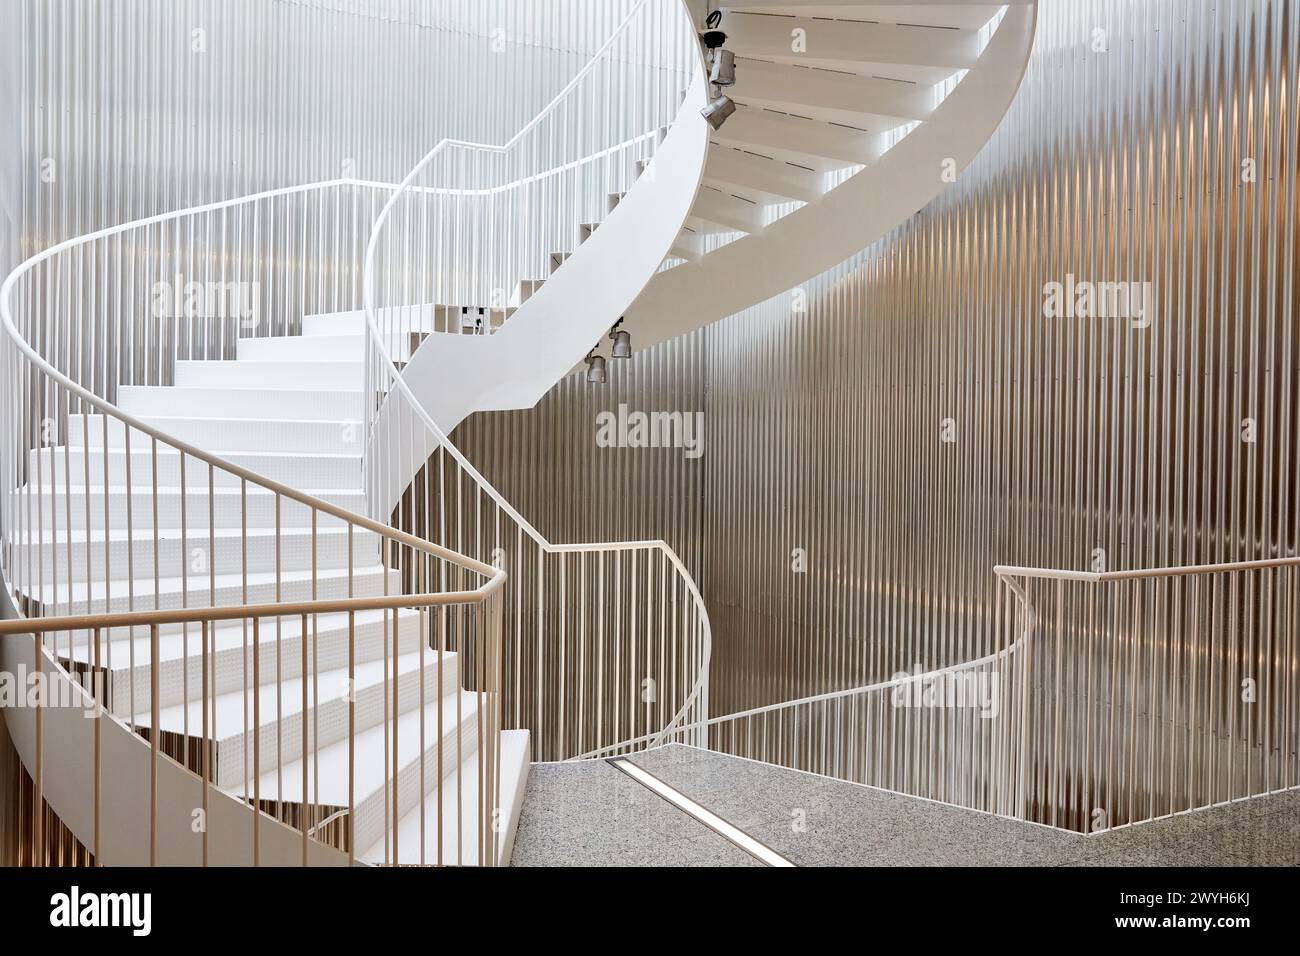 Escalera en espiral, Interior de edificio de oficinas, Bizkaia, Zamudio, Pais Vasco, España. Foto Stock